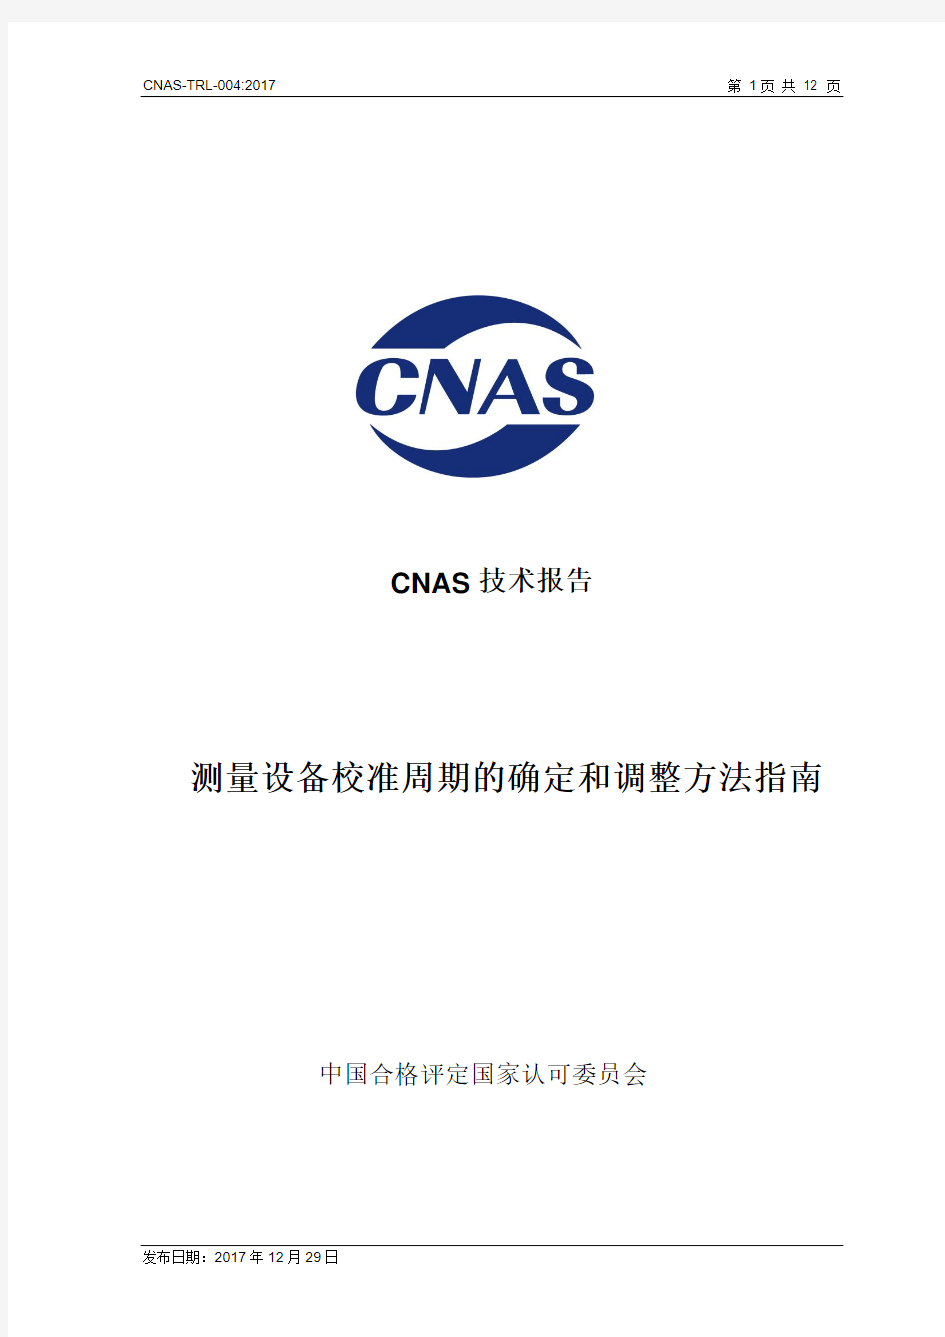 测量设备校准周期的确定和调整方法指南-CNAS